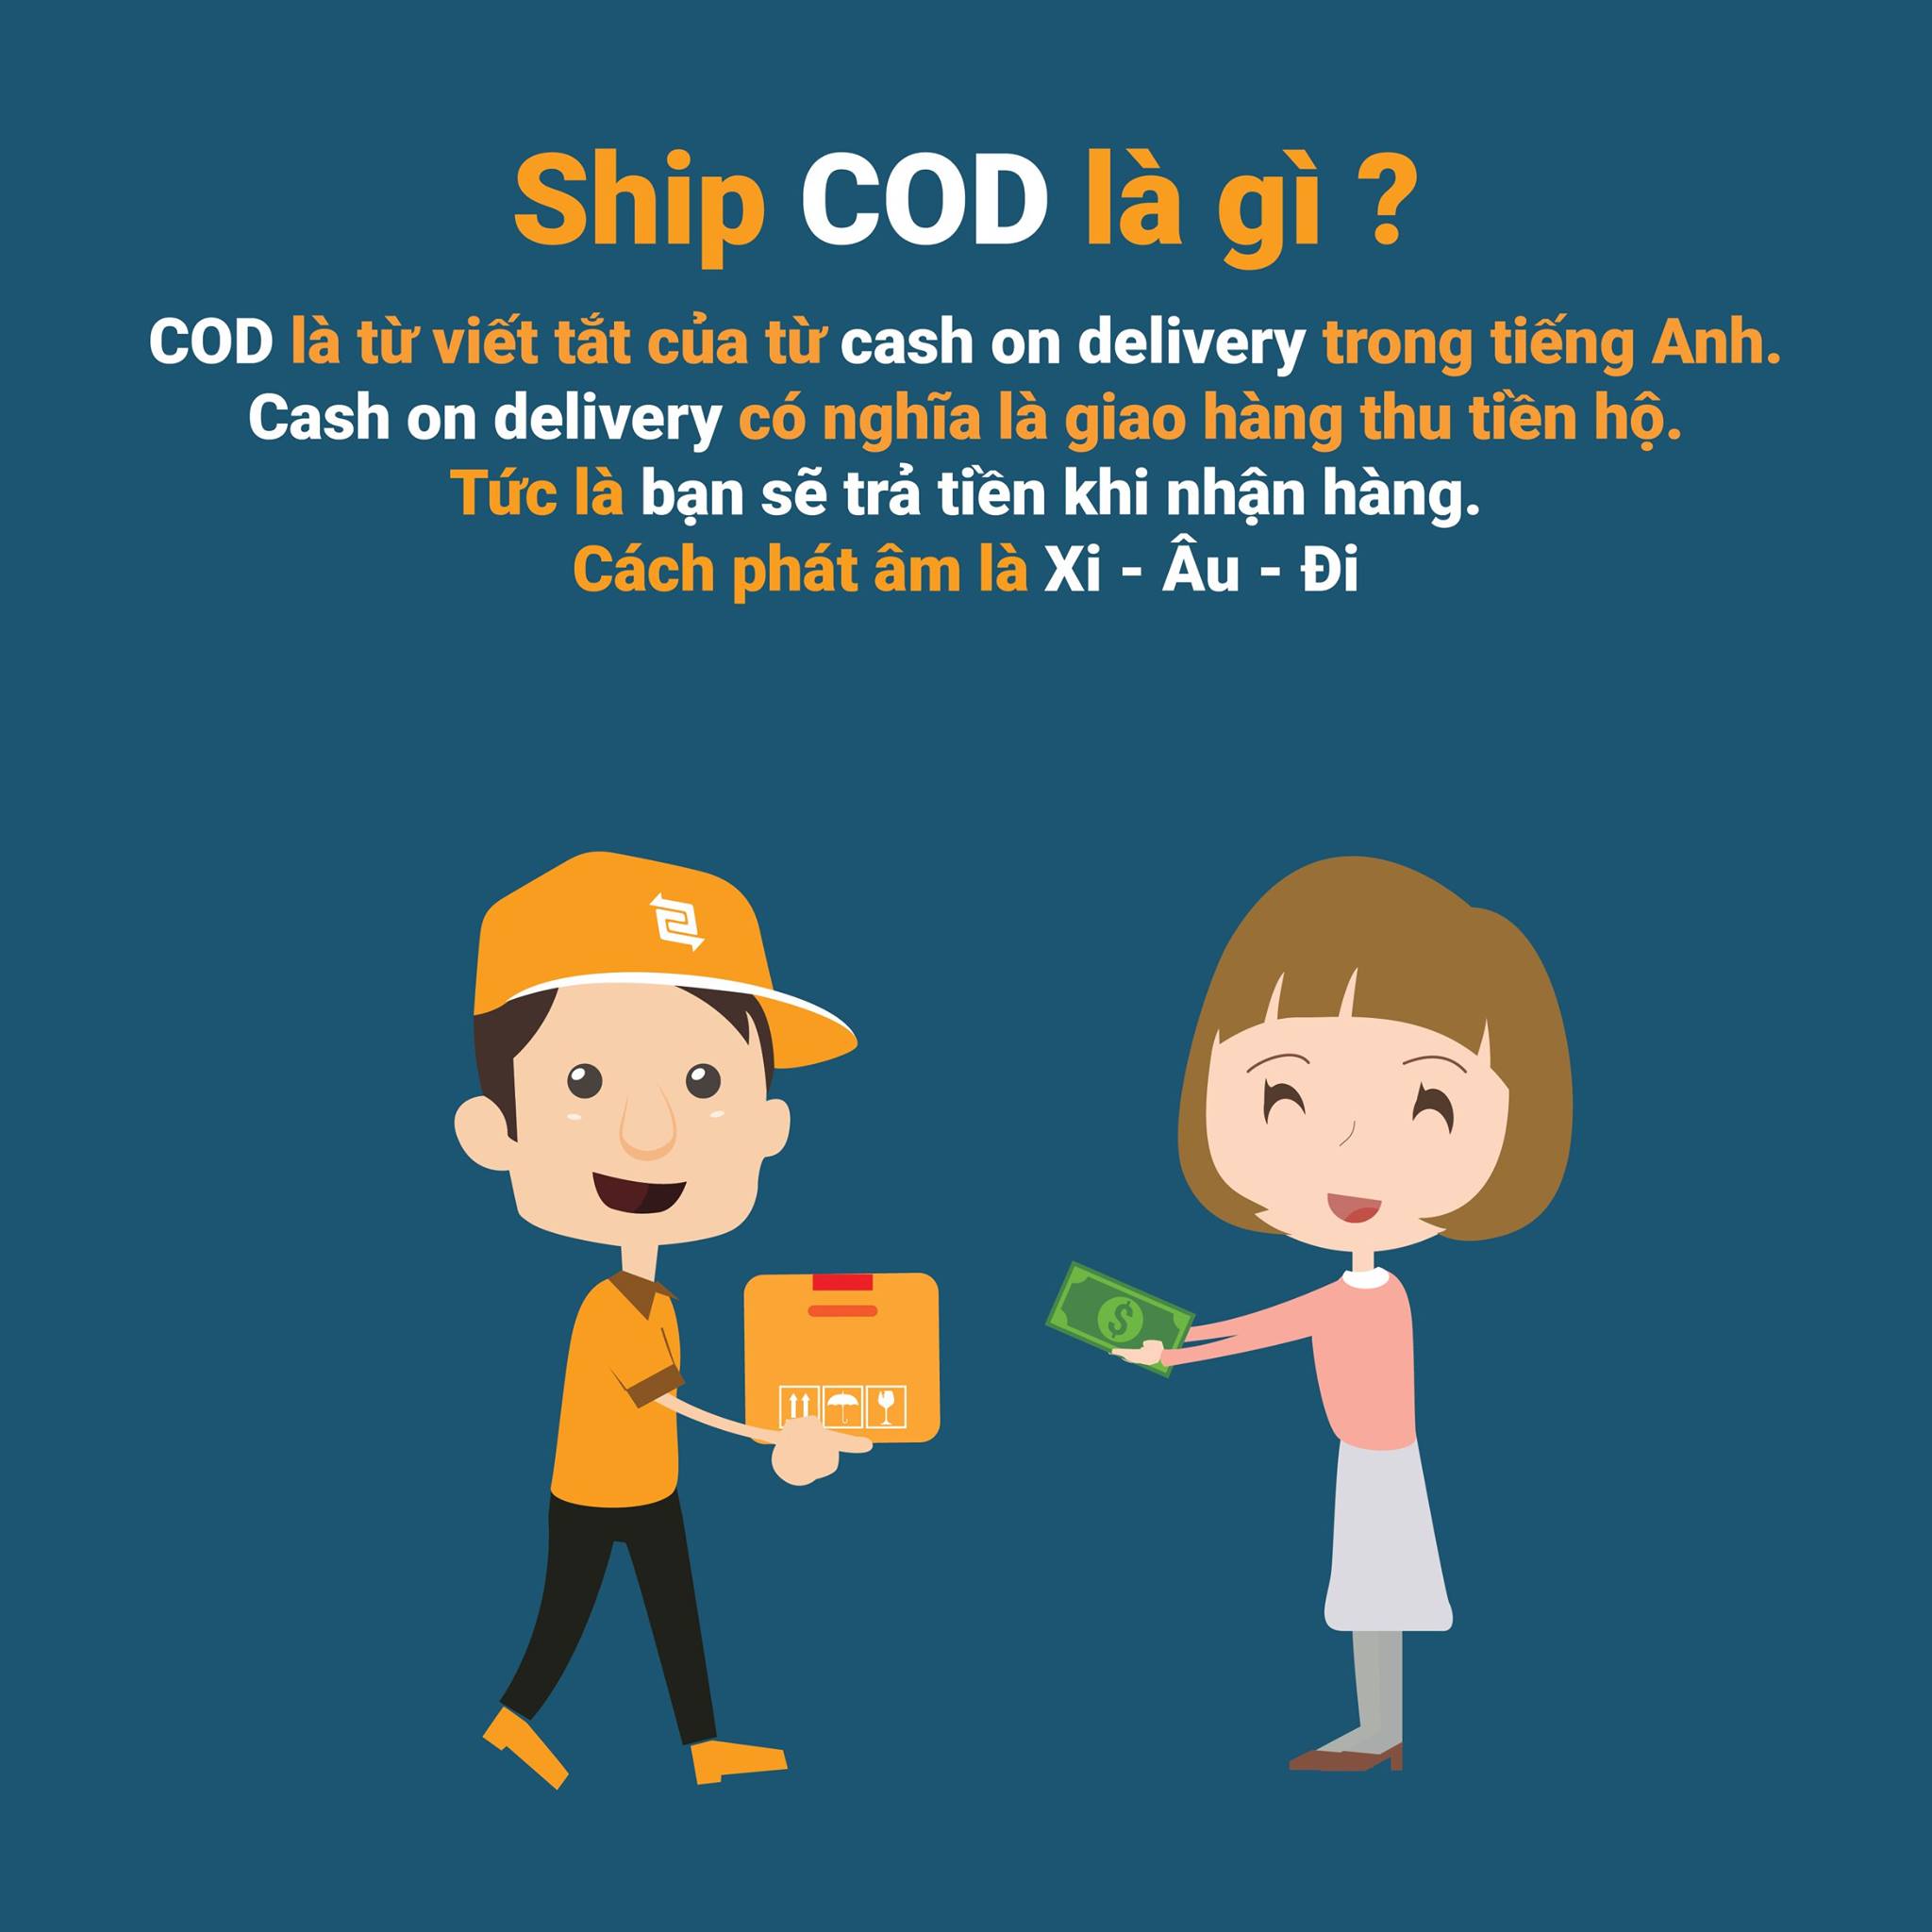 Ship COD nghĩa là gì?